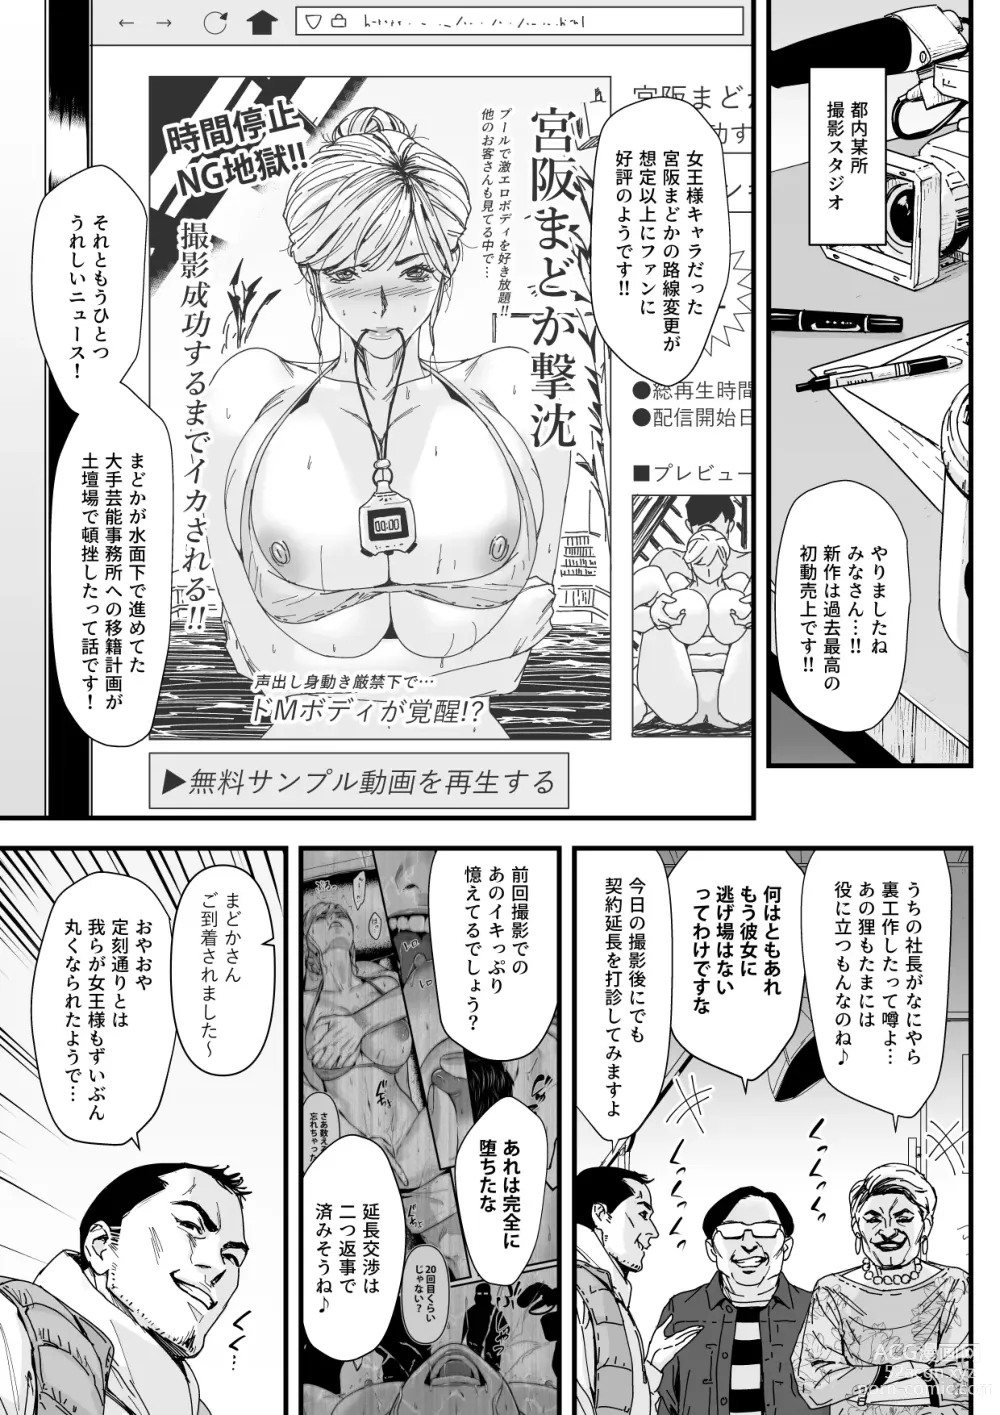 Page 2 of doujinshi カリスマAV女優（23歳）を引退撤回するまでイカせまくる 3 『ファン感謝祭編』